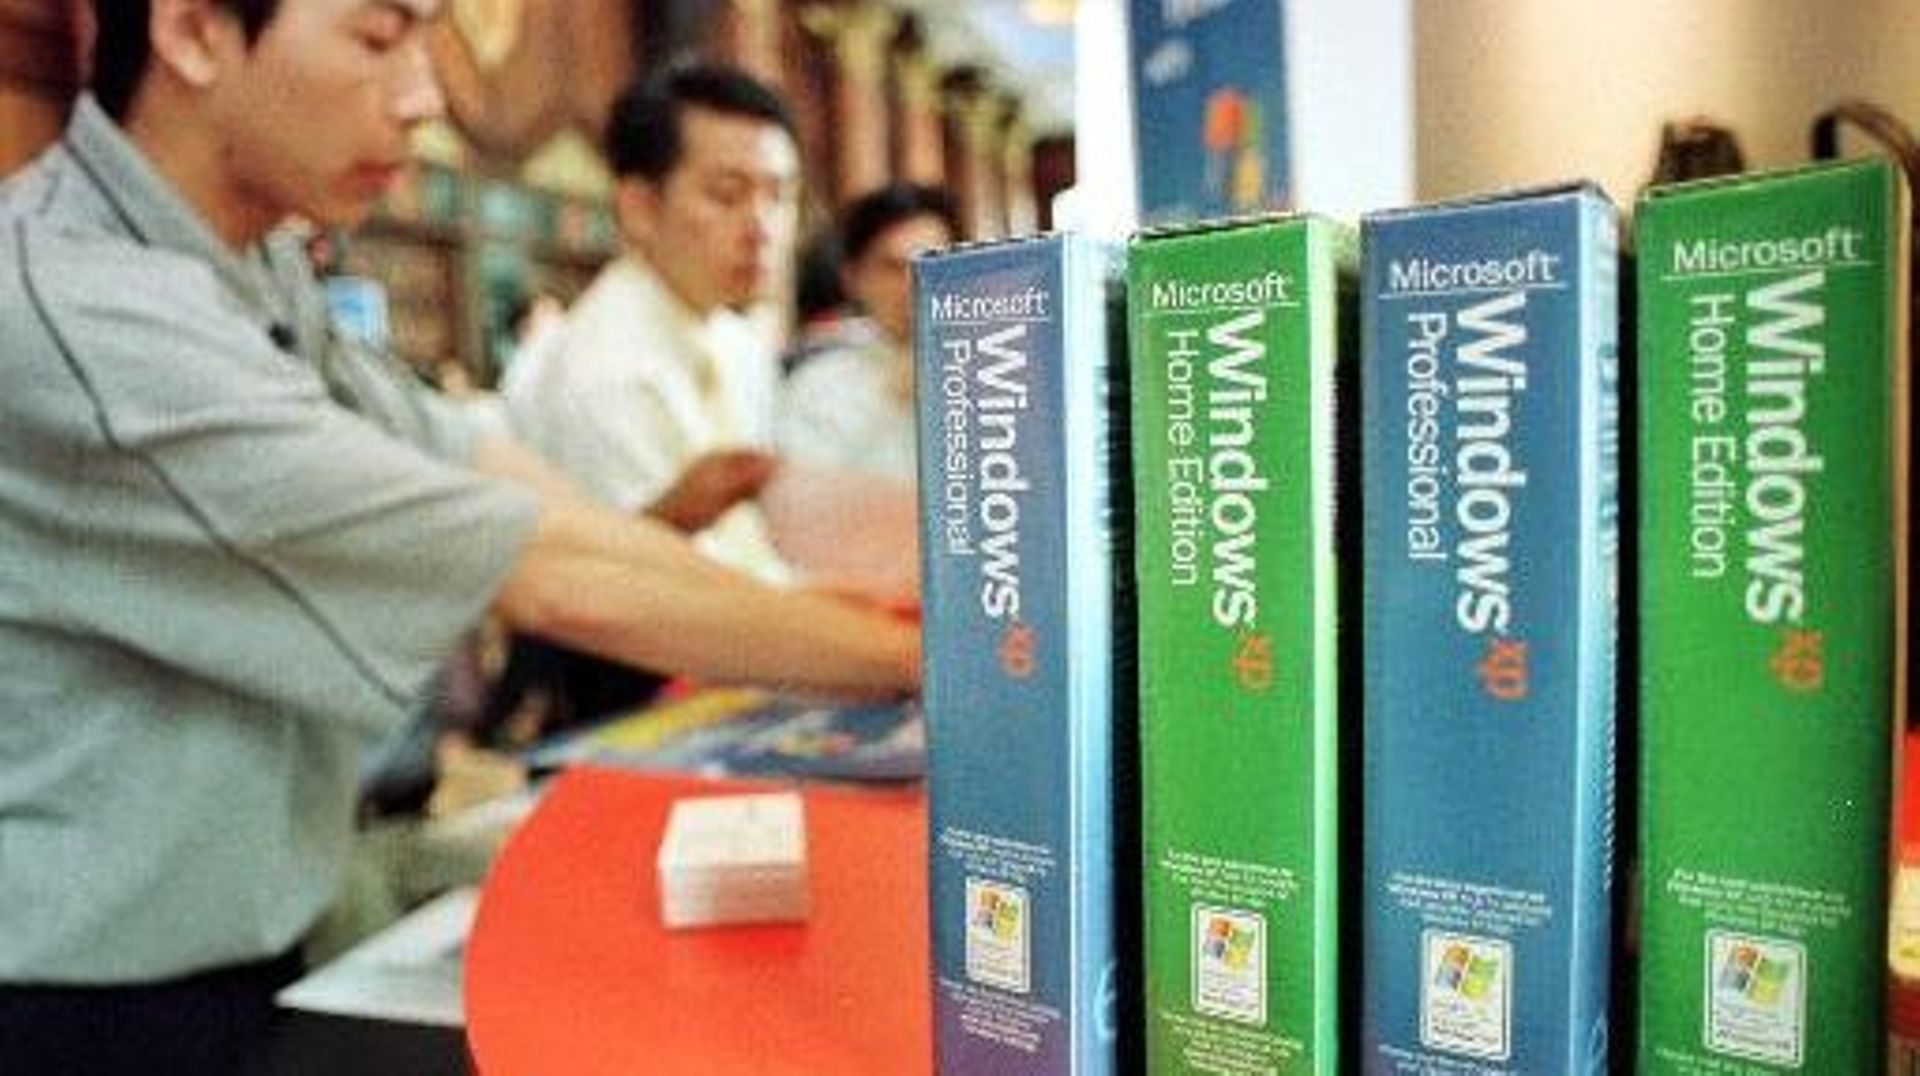 Dans la mesure où Windows est installé sur plus de 90% des ordinateurs, même un petit pourcentage sous XP peut se traduire par un nombre total énorme